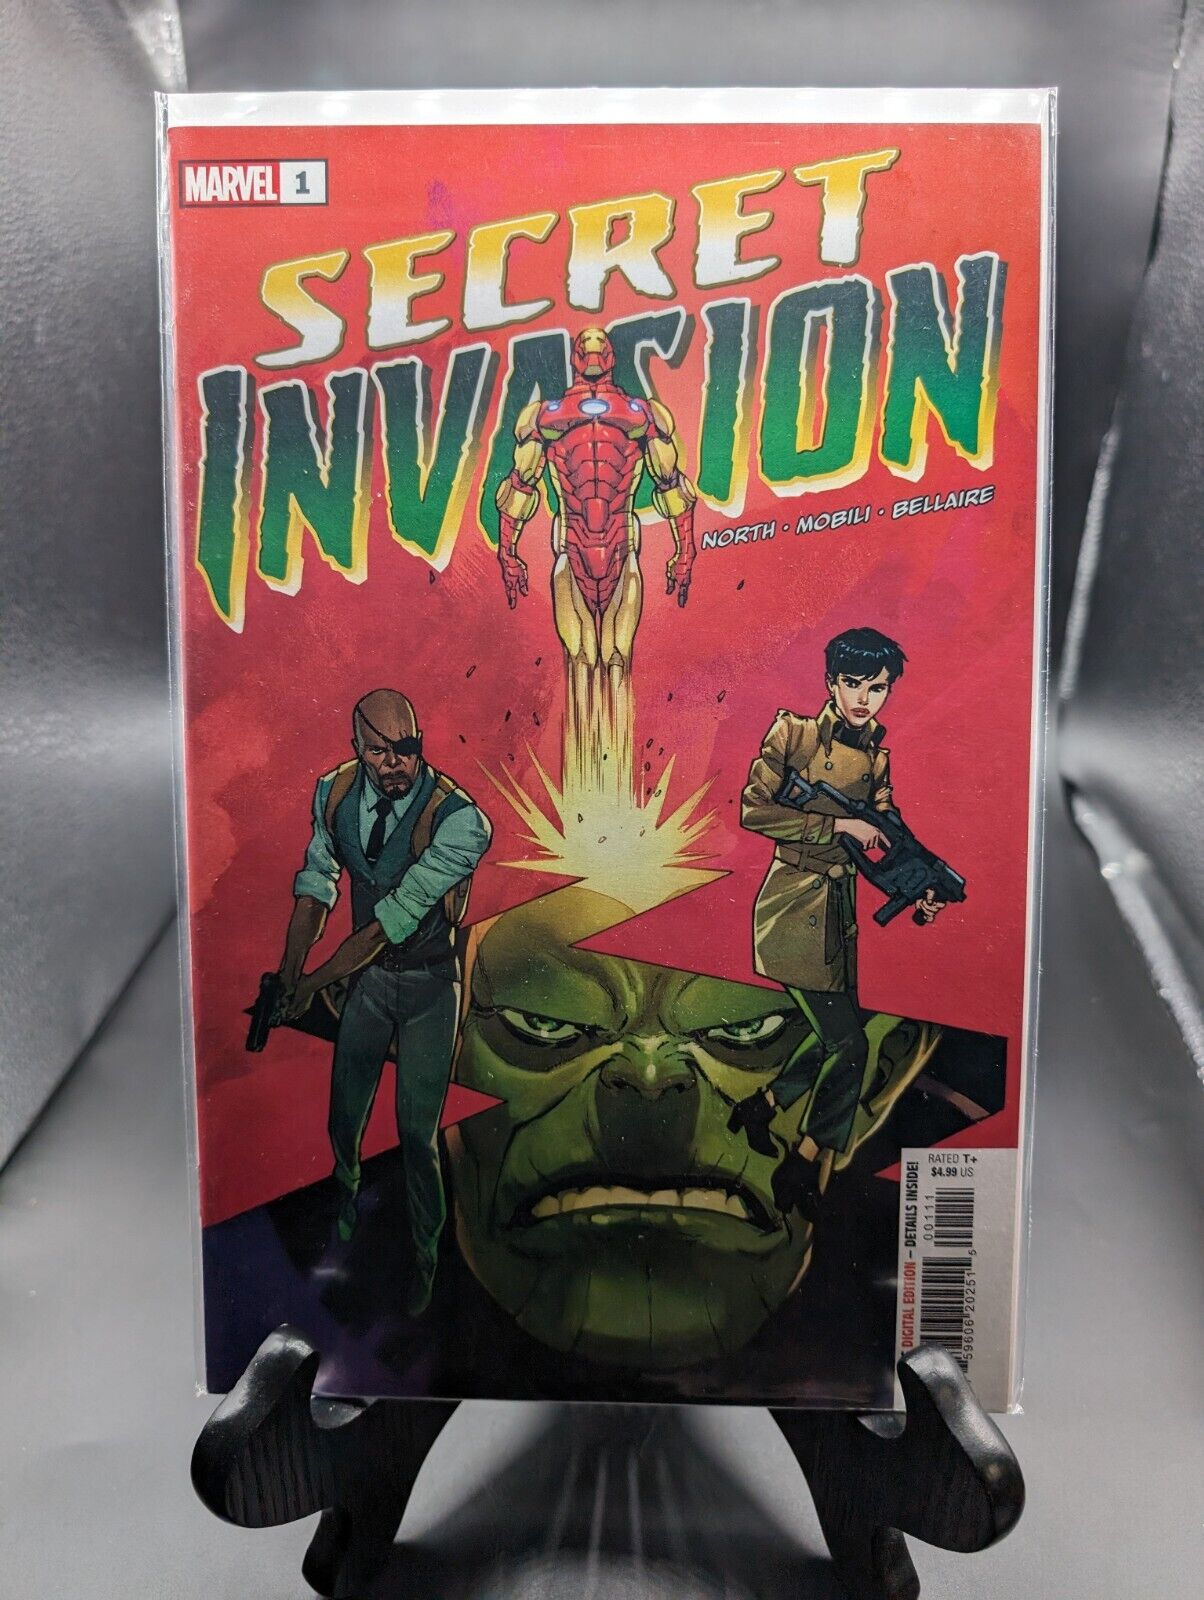 Secret Invasion 1